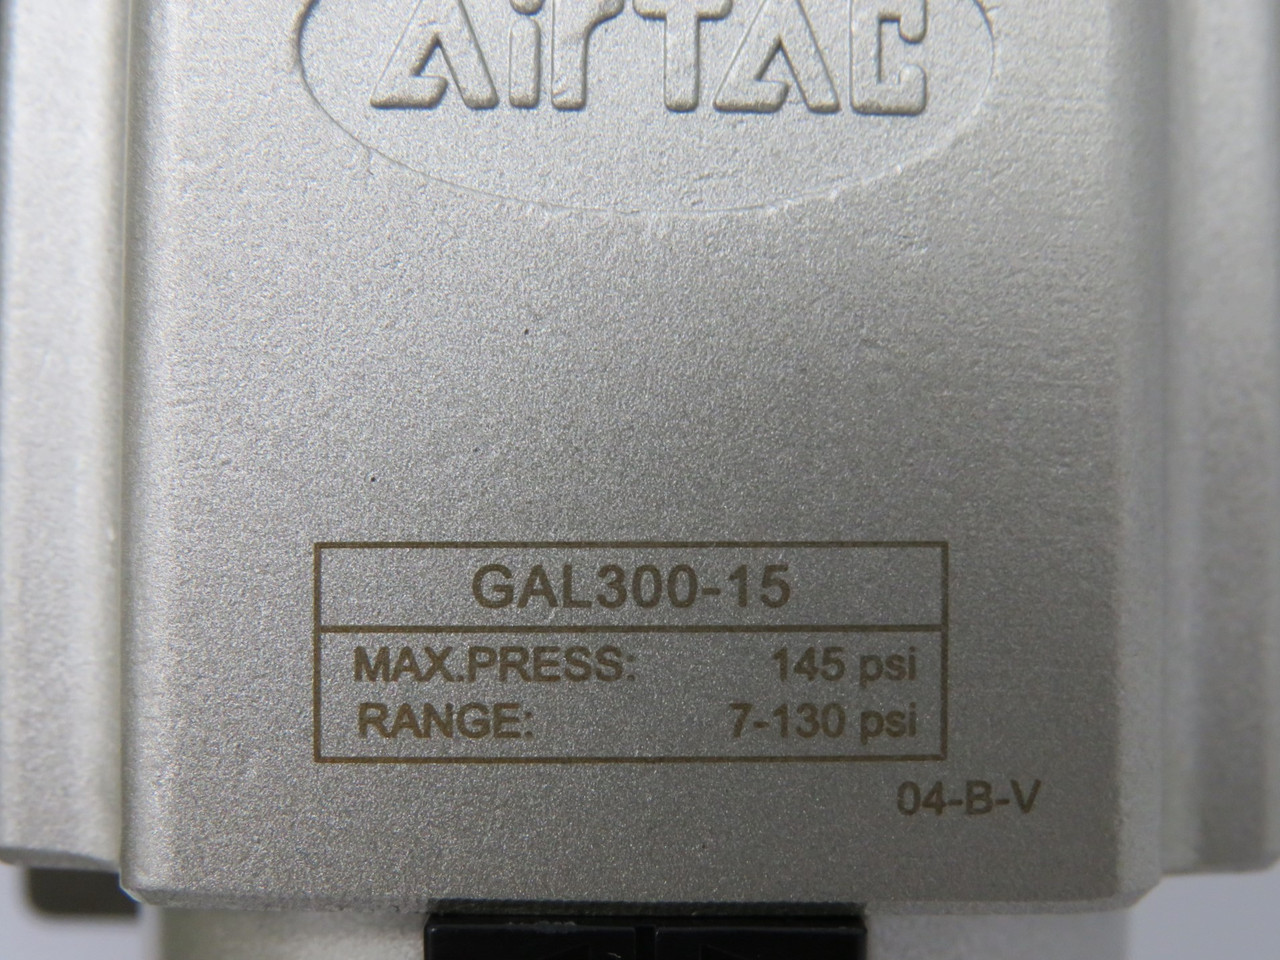 Air Tac GAFC30015AST Filter Regulator Combination 1/2" Port *Open Box* NEW